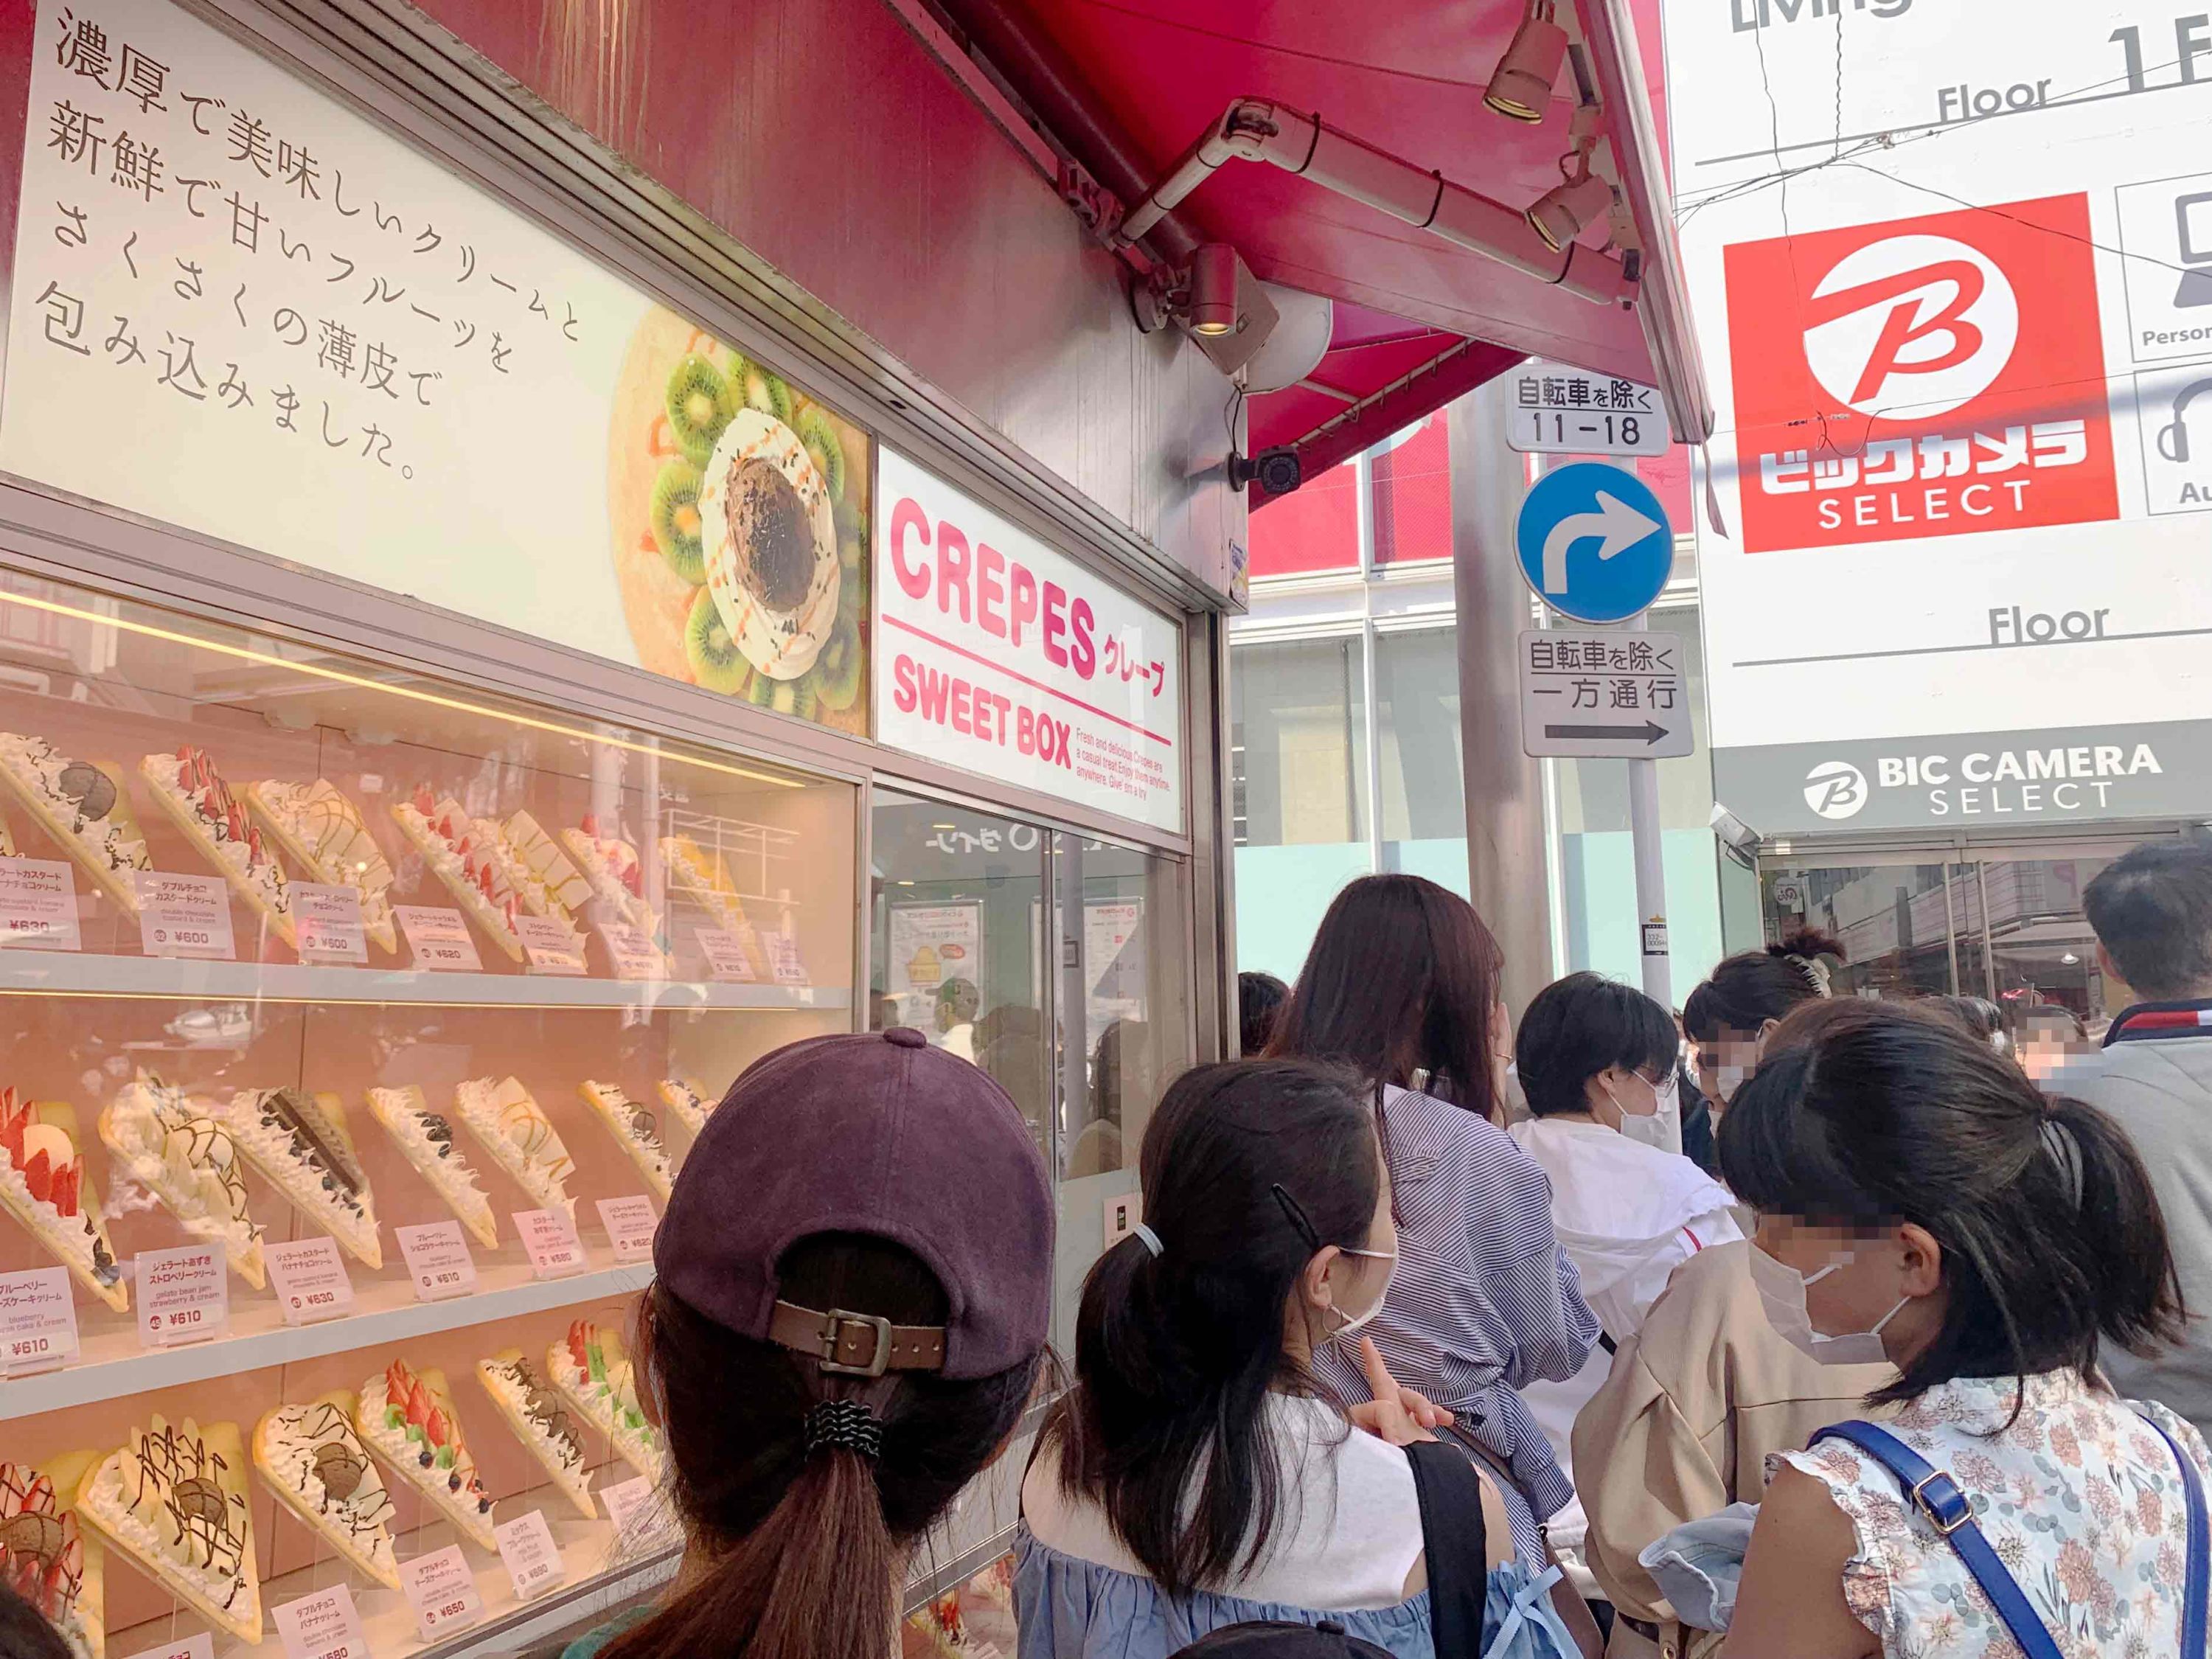 Shopping and eating on Takeshita Street